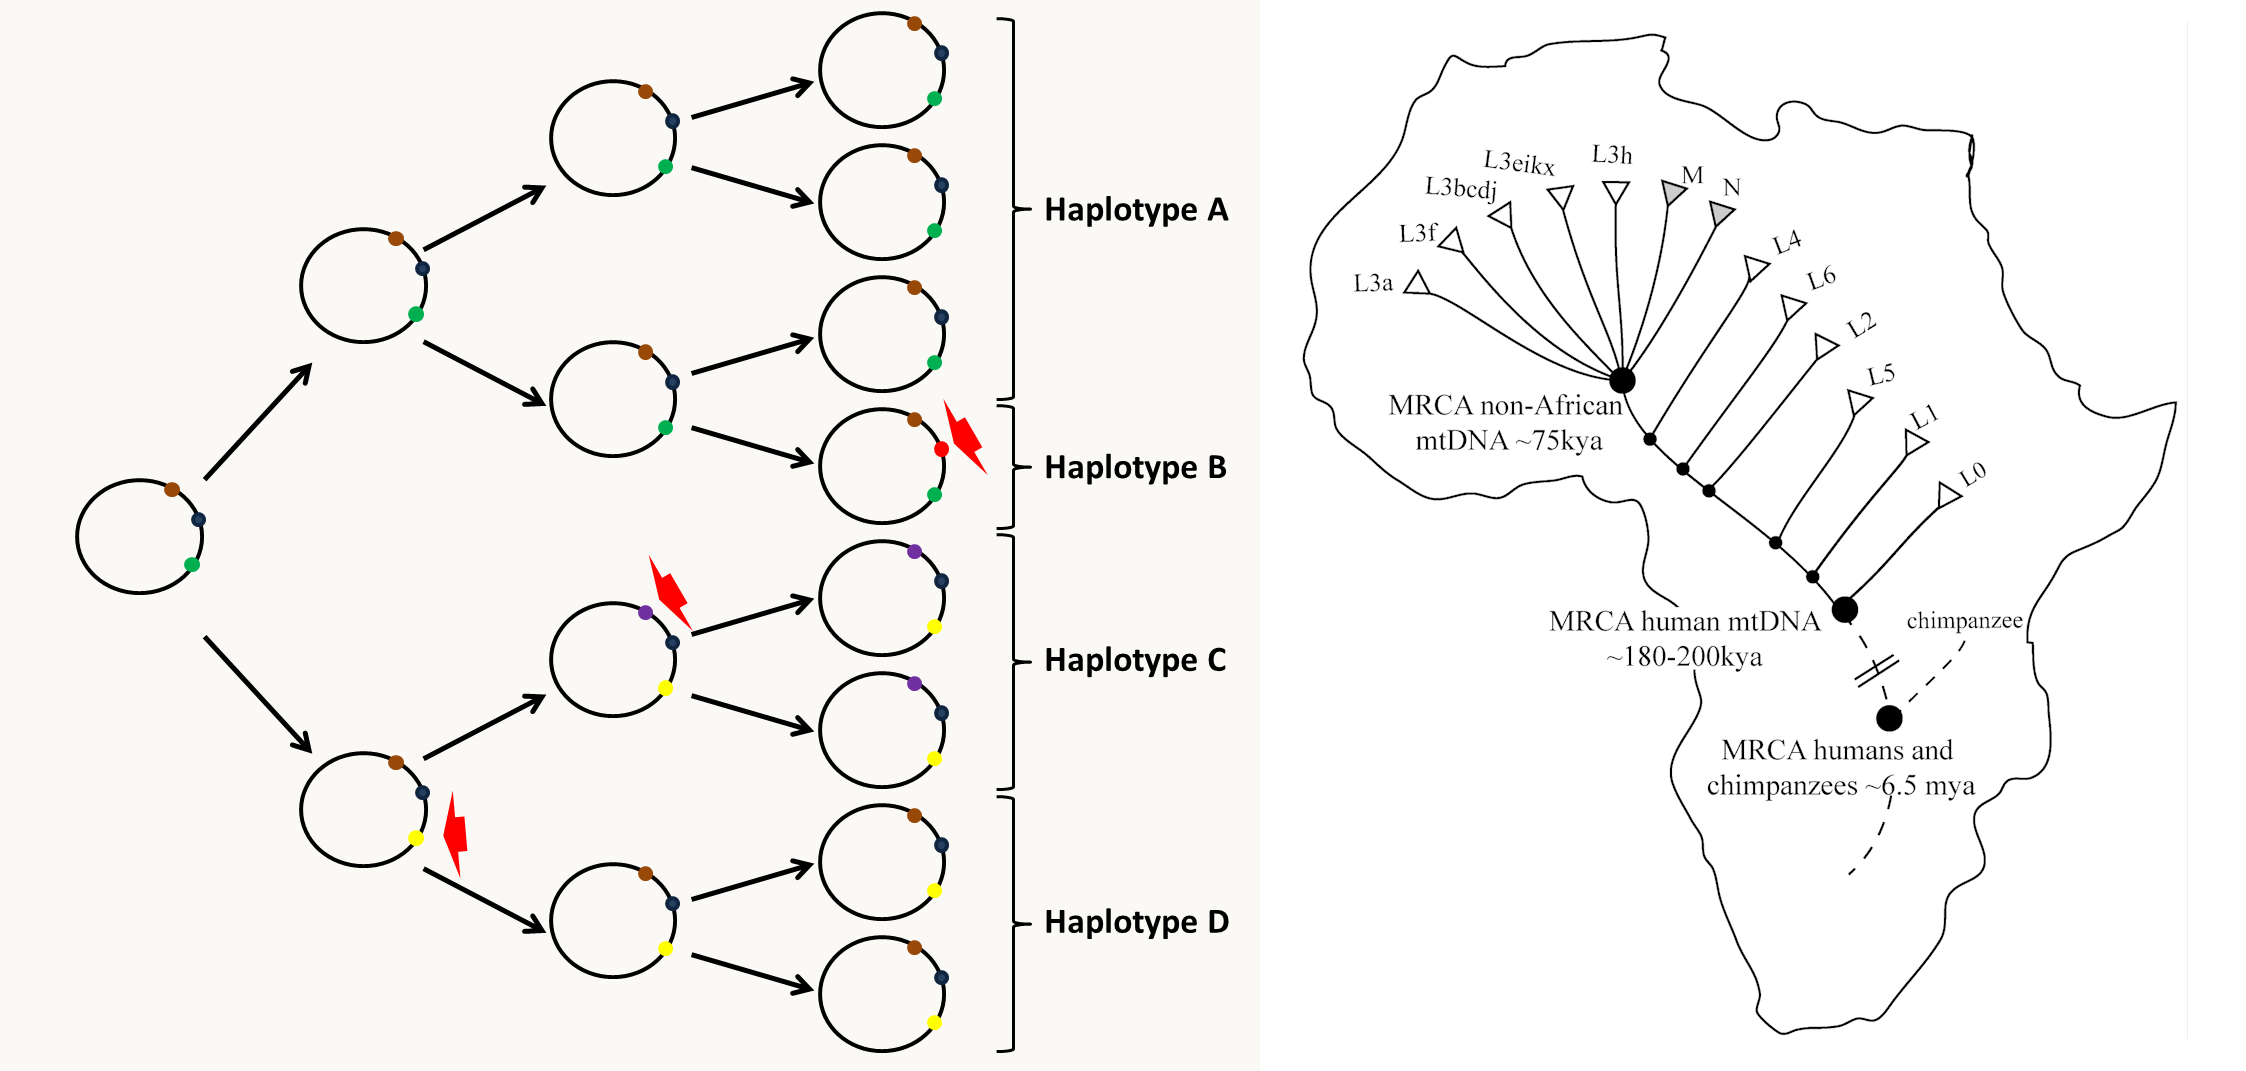 évolution des haplotypes mitochondriaux et exemple de l'haplotype L, M, N en Afrique et hors d'Afrique.